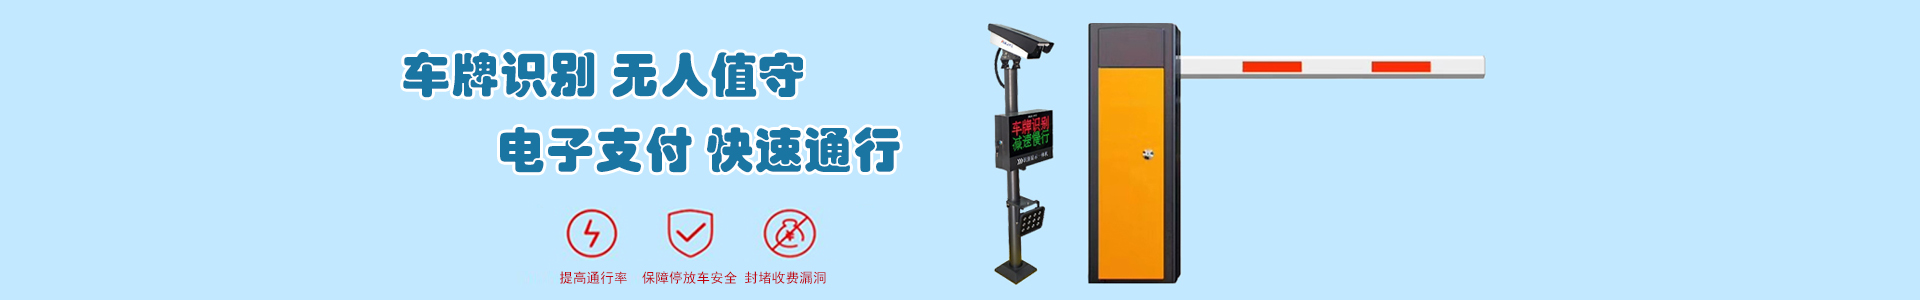 监控7-监控系统-上海帆蓝智能科技有限公司-车辆车牌识别|监控摄像头|道闸|小区门禁|人脸识别|伸缩门|